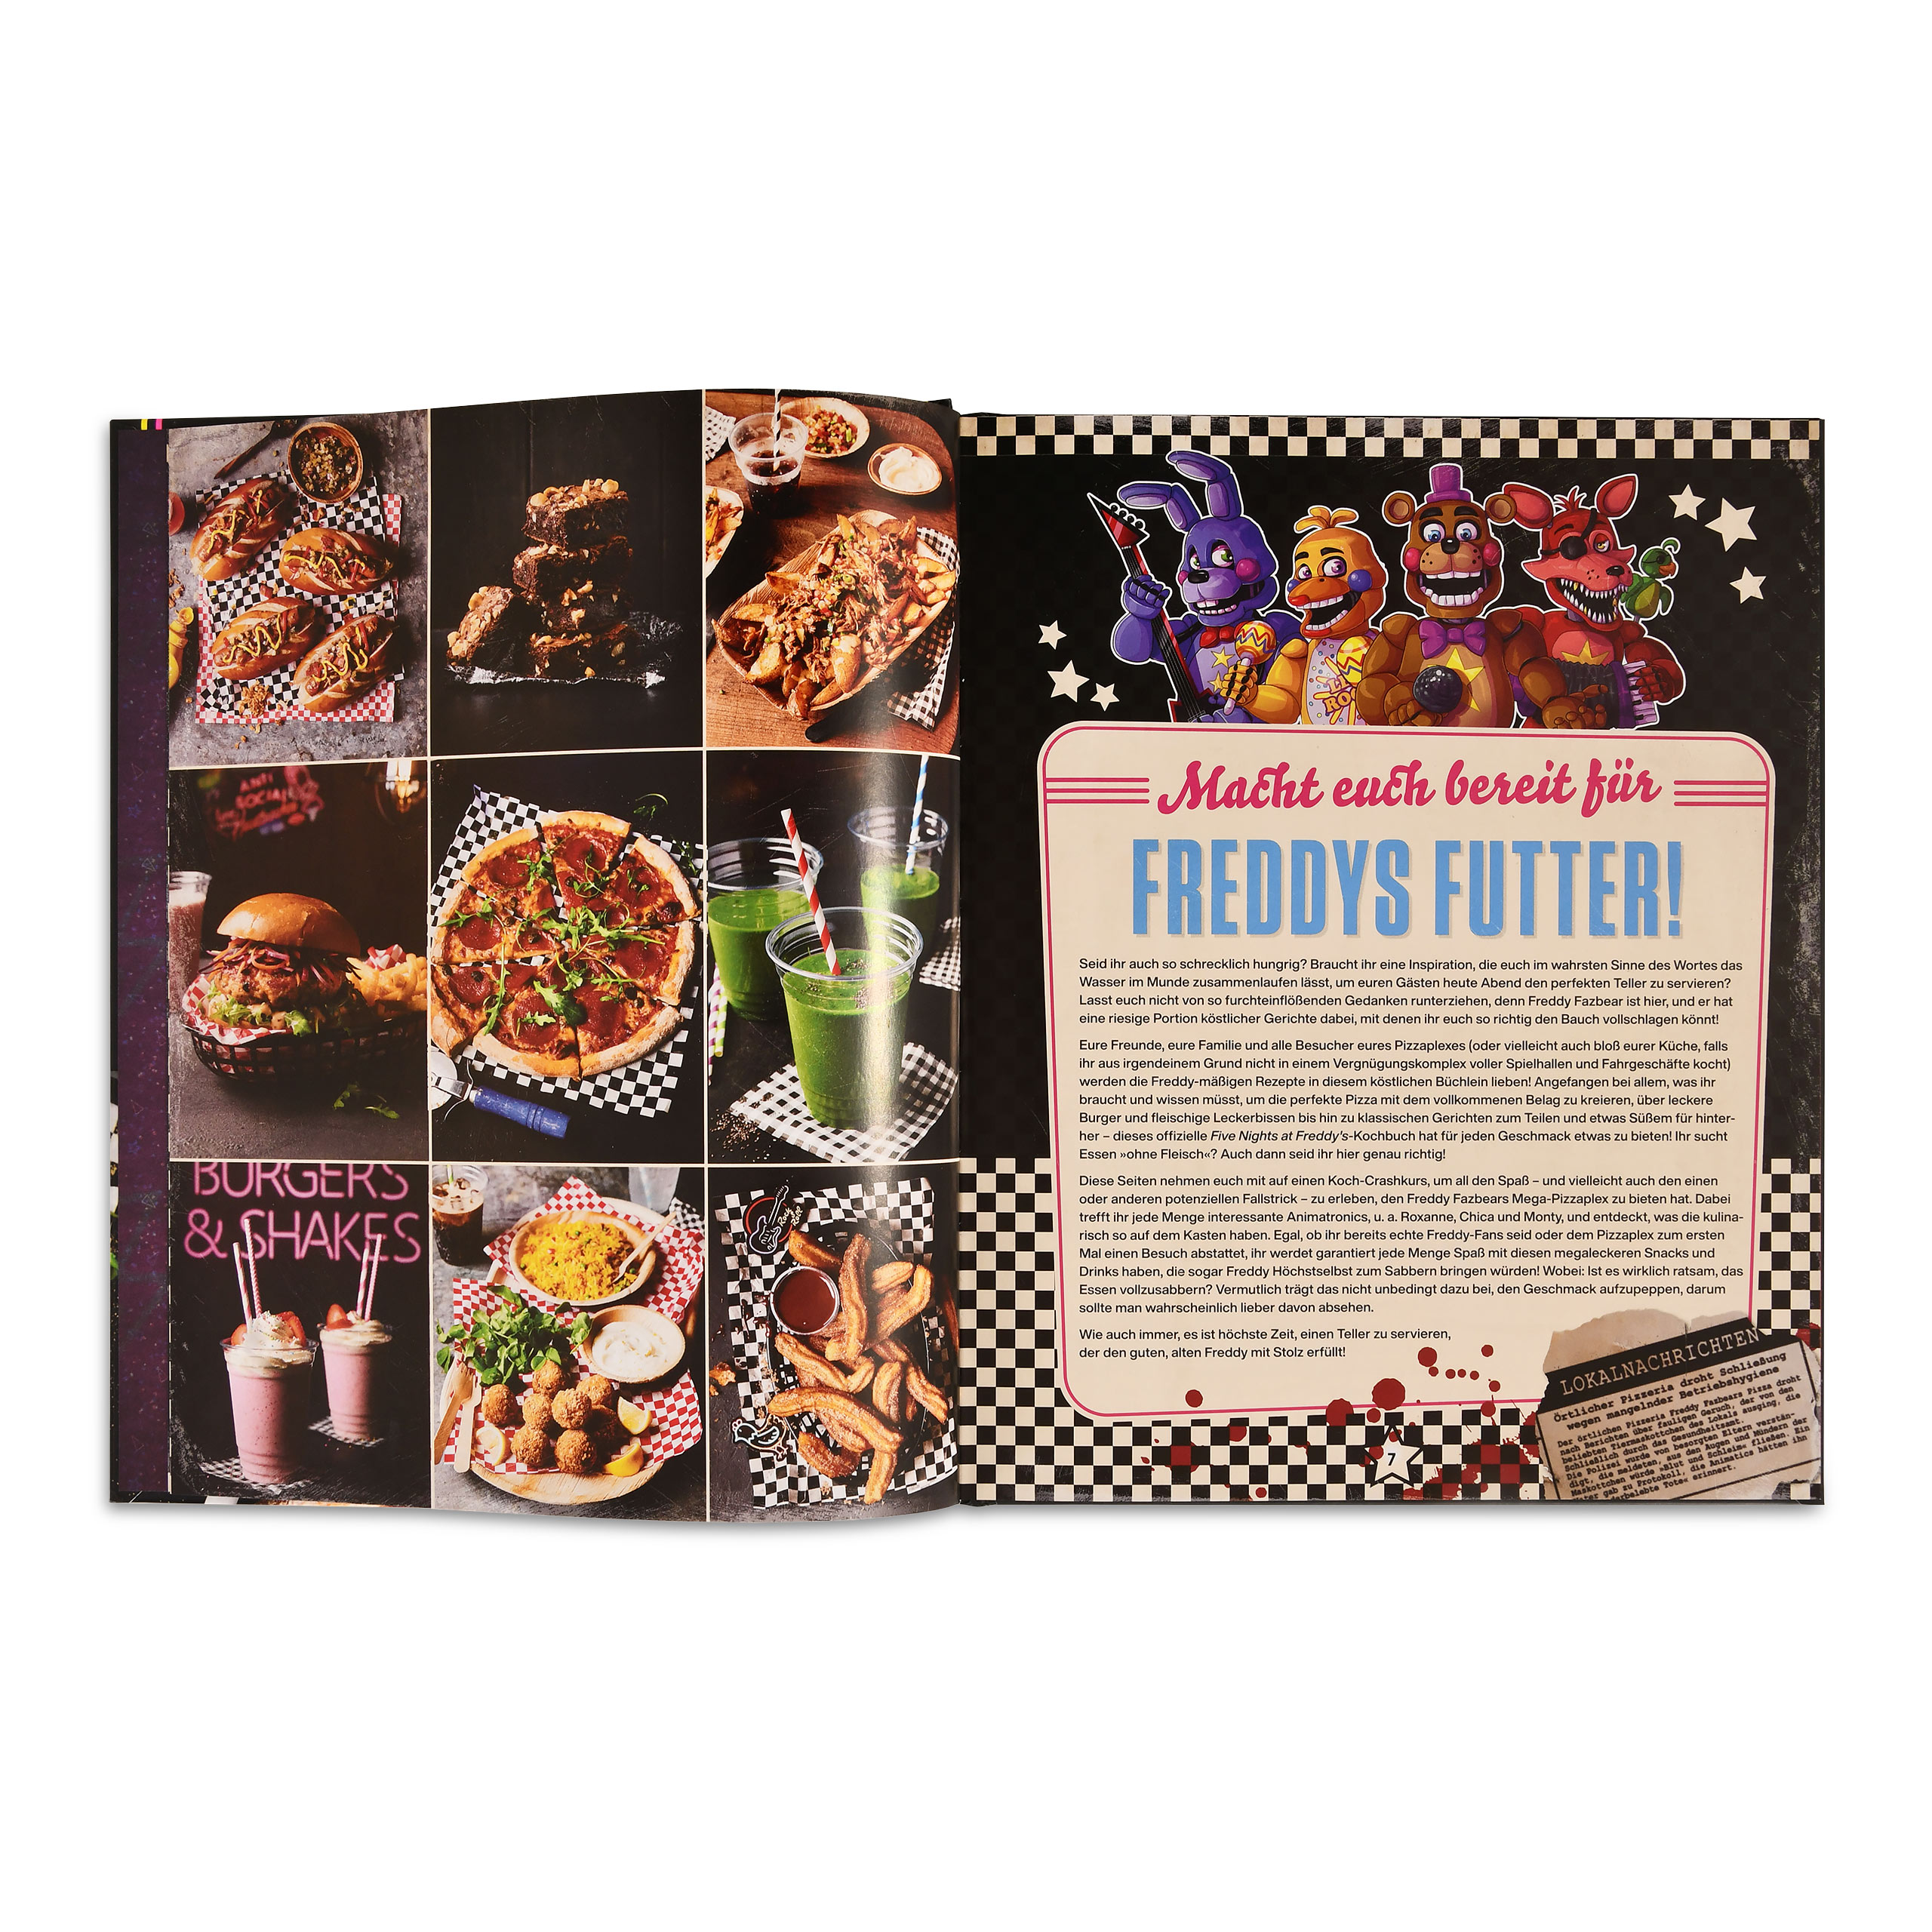 Le livre de cuisine officiel de Five Nights at Freddy's